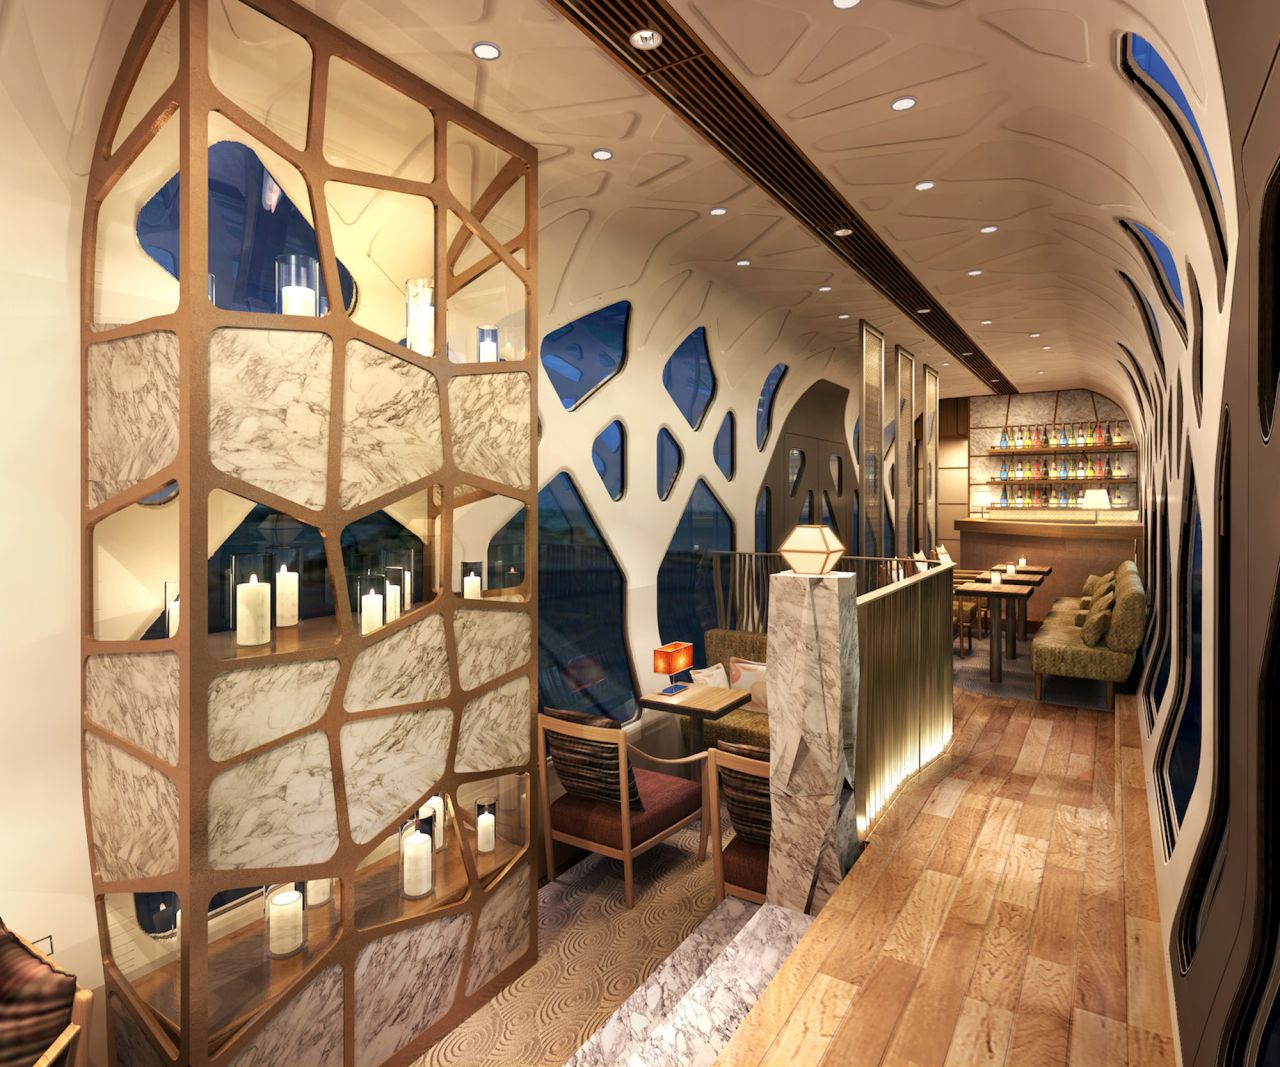 Shiki-shima's swish interiors are by Japanese designer Ken Okuyama. 